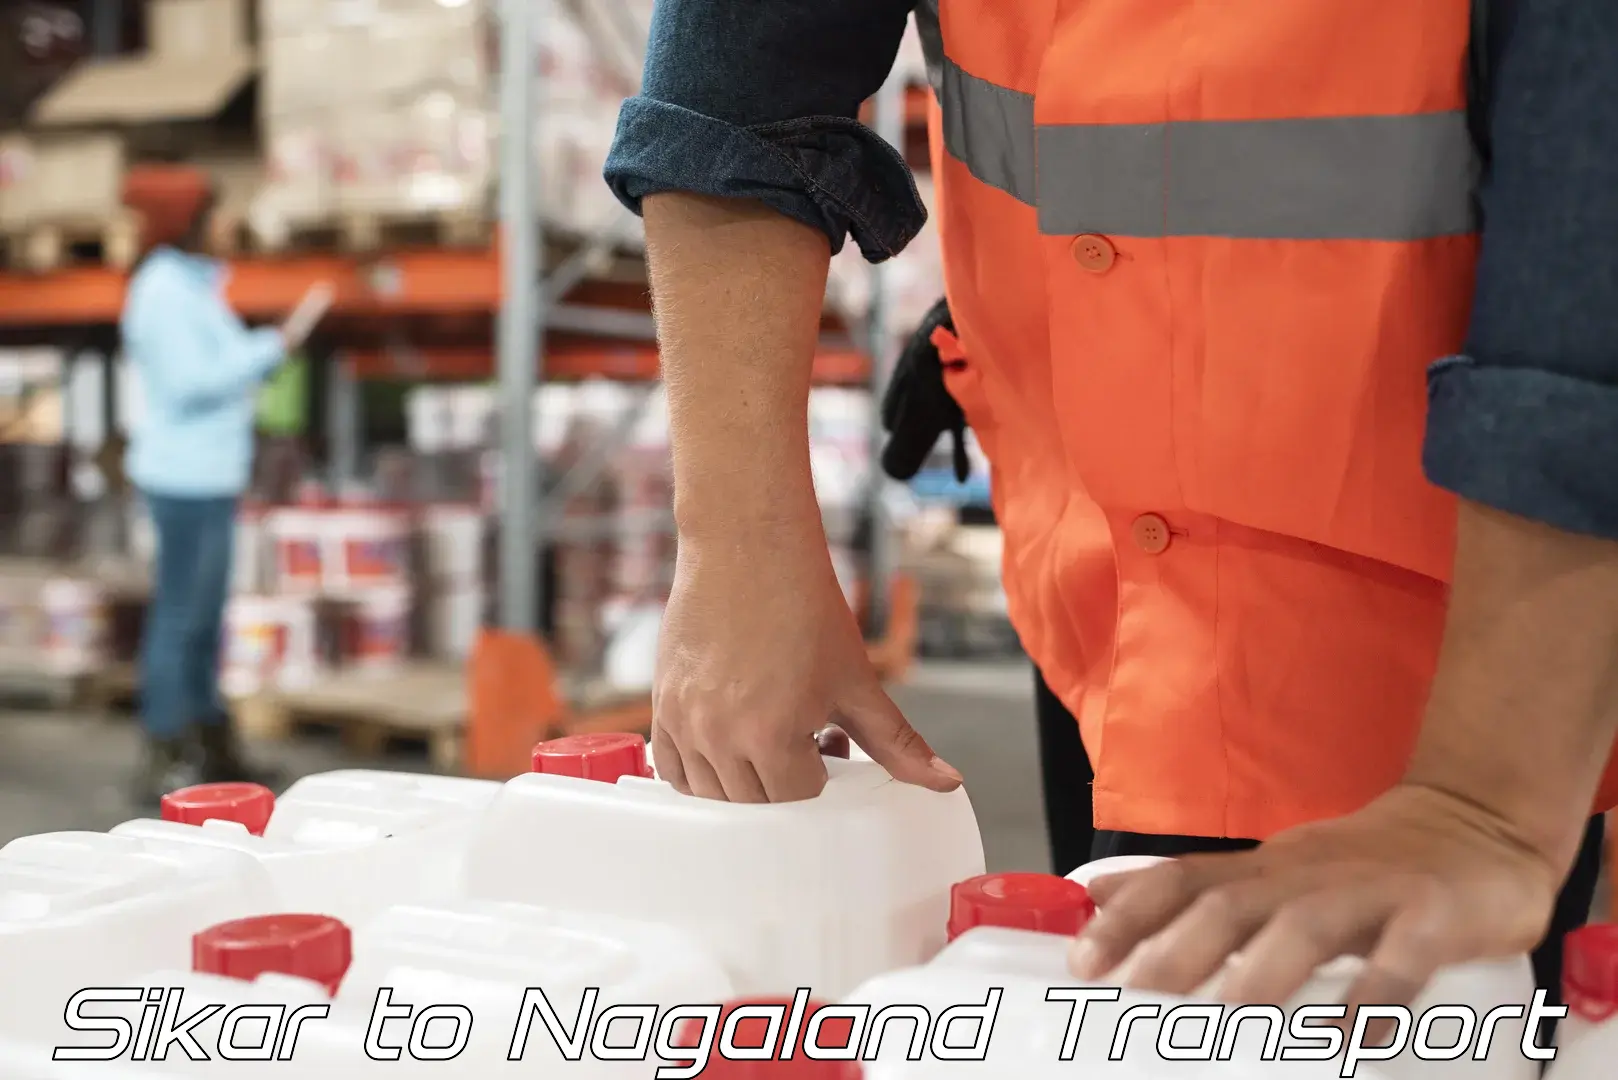 Online transport service Sikar to Nagaland